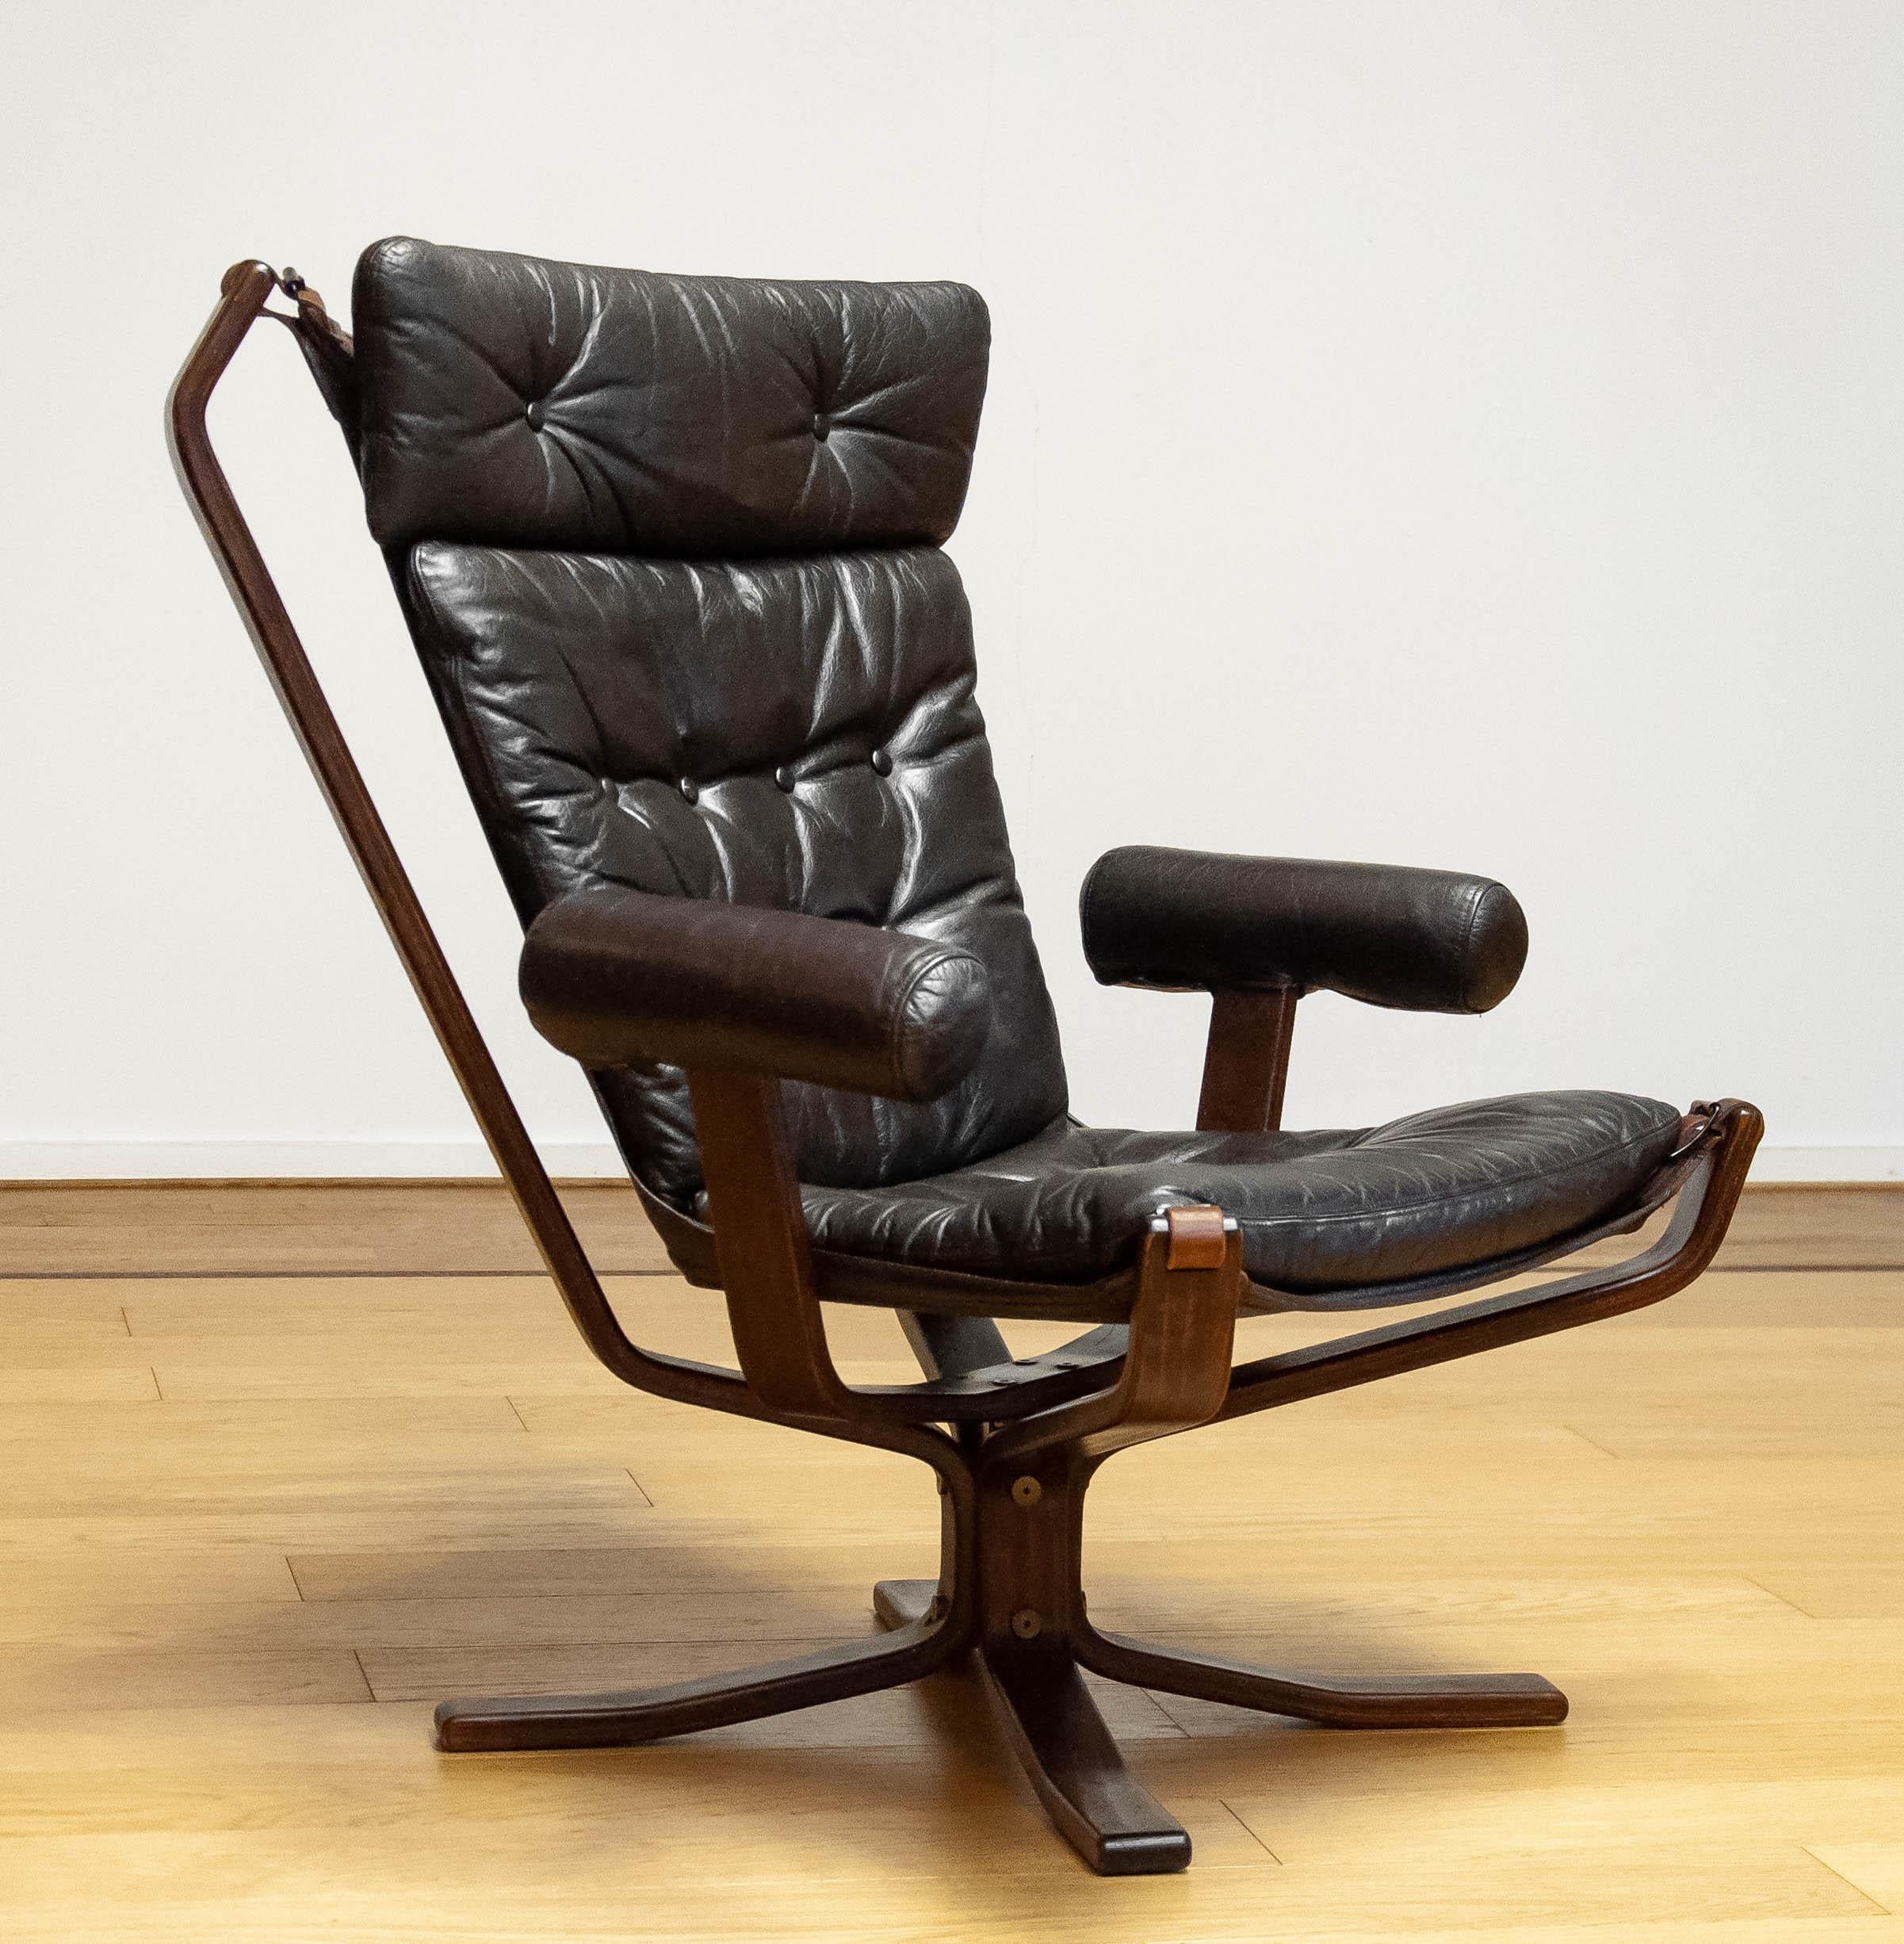 Magnifique et rare chaise de salon modèle 'Superstar' conçue par Sigurd Ressel et fabriquée par Trygg Mobler au Danemark.
Ces modèles ont été fabriqués en édition limitée.
Également célèbre sous le nom de 